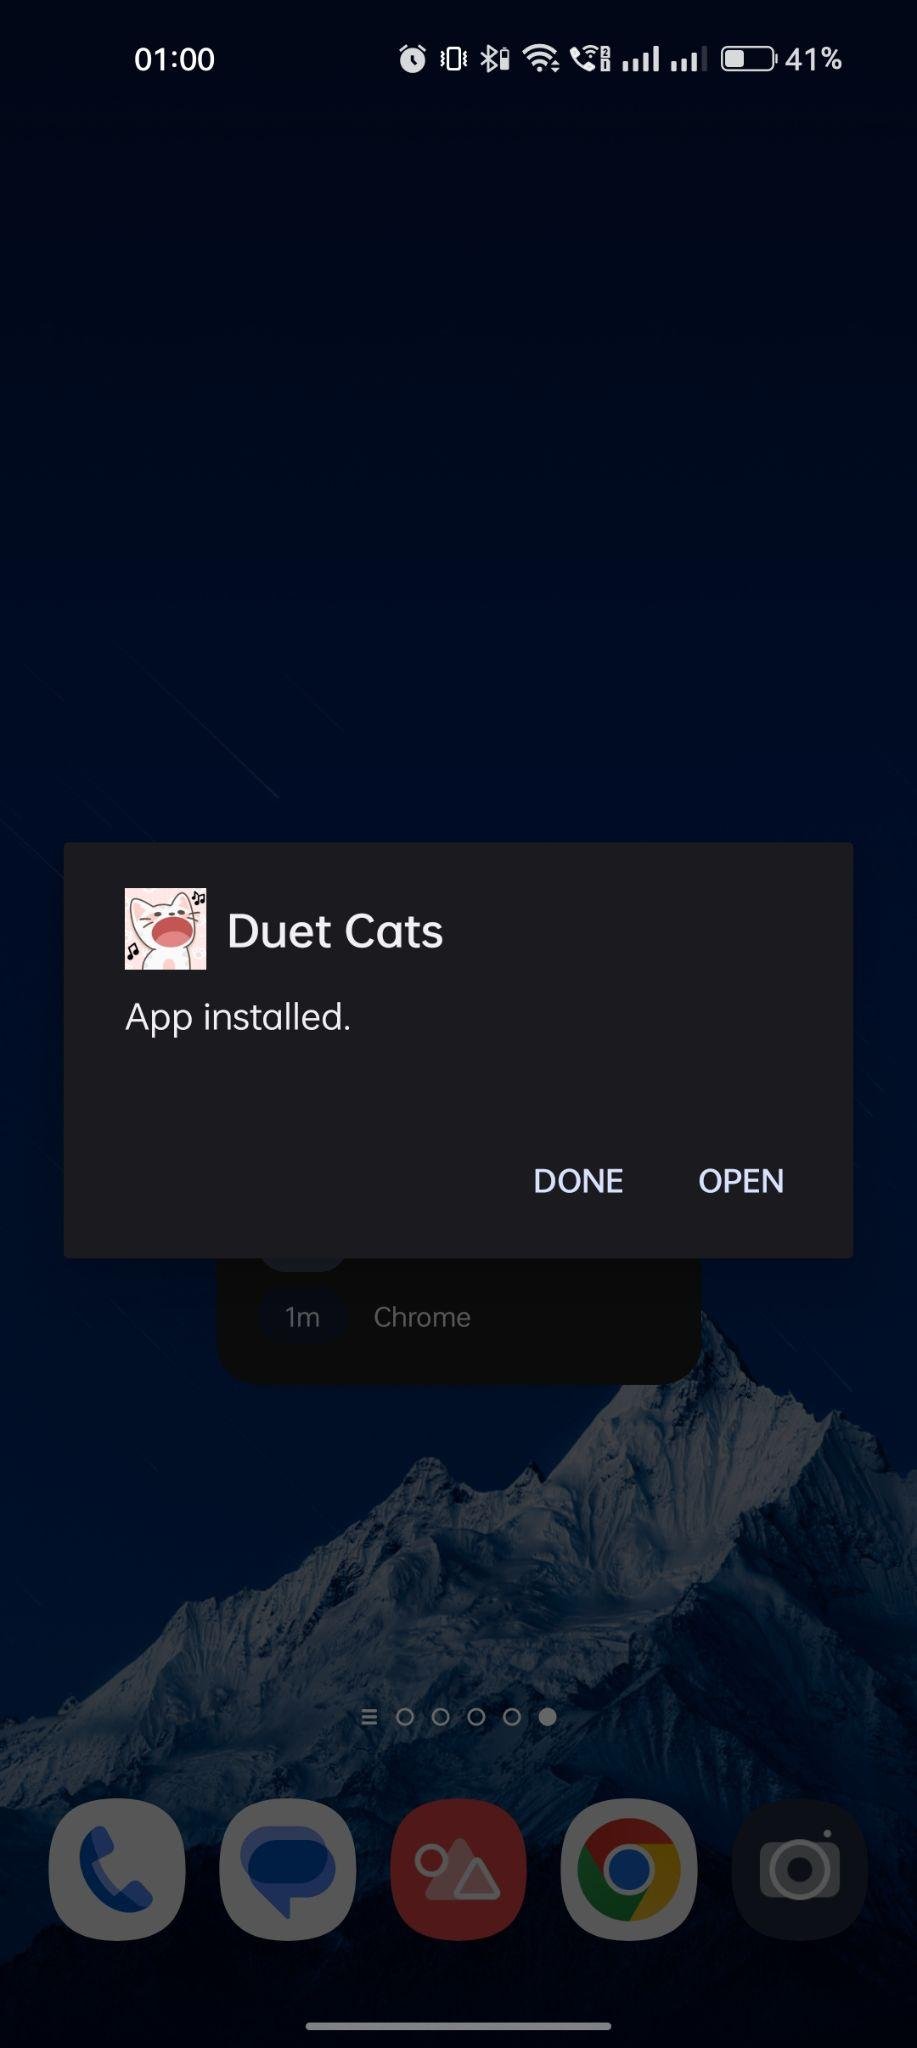 Duet Cats apk installed